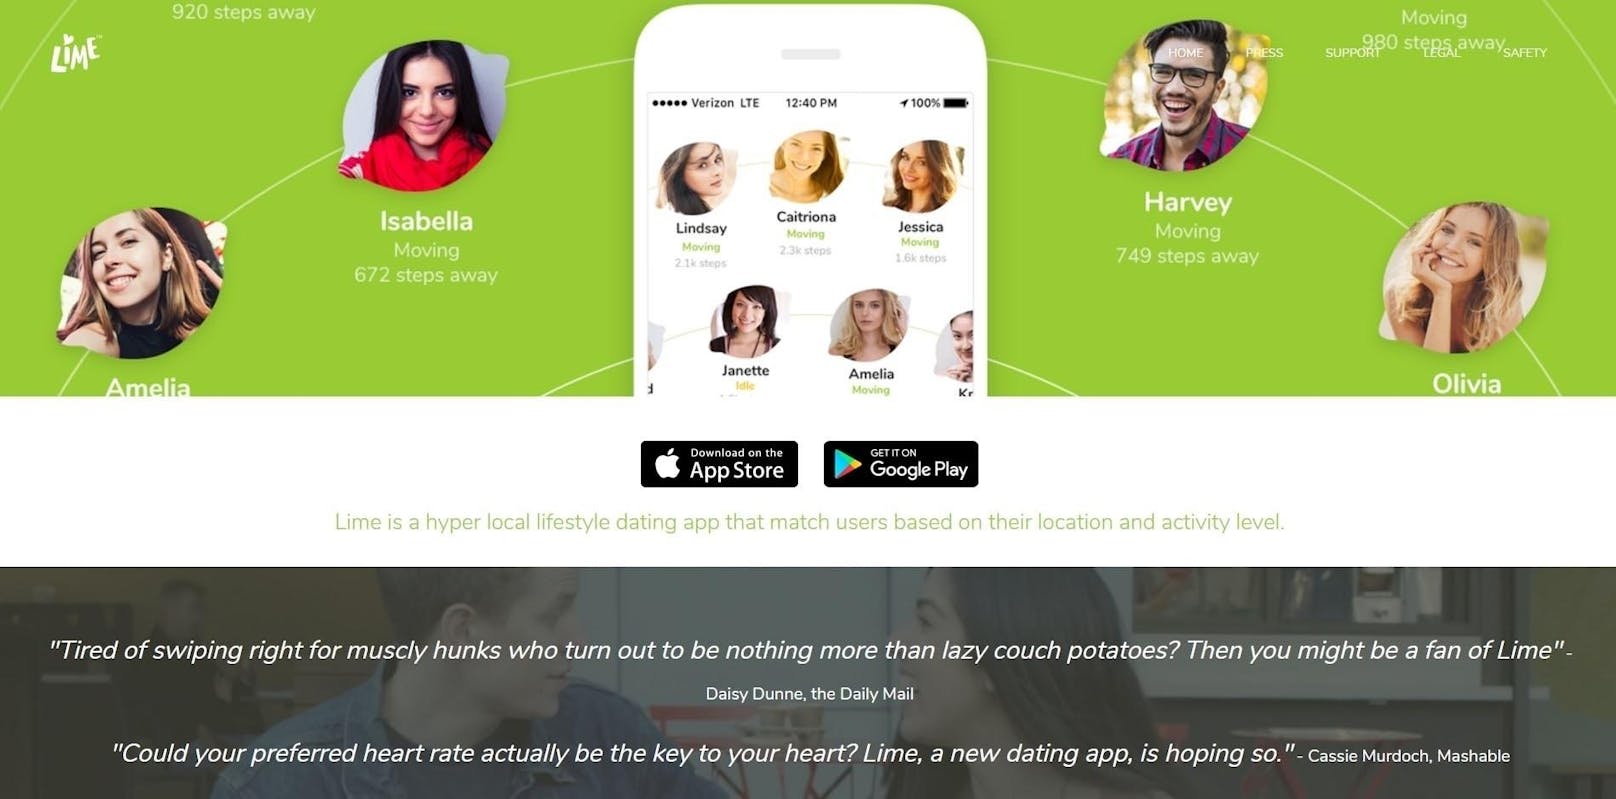 Endlich gibt es sie, die Datingplattform für Menschen die gleich faul sind! Mitglieder können gezielt nach potenziellen Partnern mit dem gleichen (niedrigen) Aktivitätslevel suchen. <a href="http://www.lime.dating/" target="_blank">lime.dating</a>